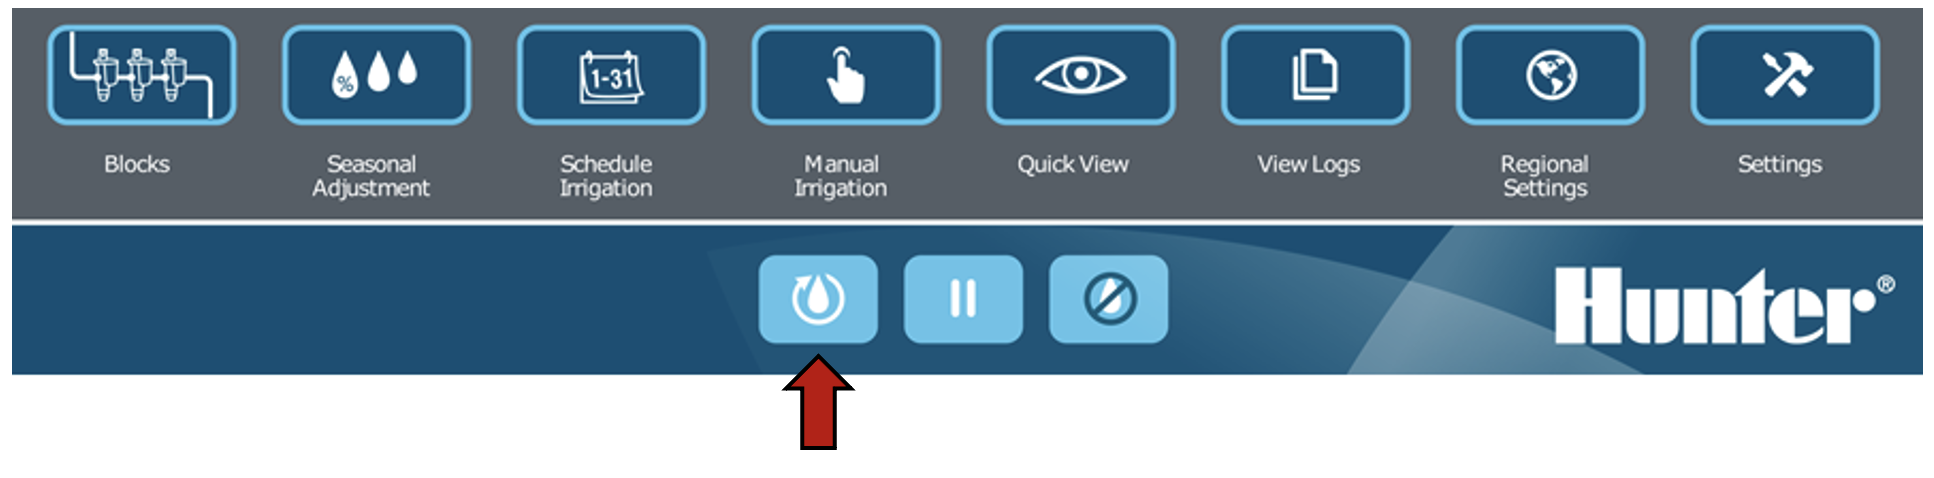 Immagine dell'interfaccia che evidenzia il pulsante Riprendi.